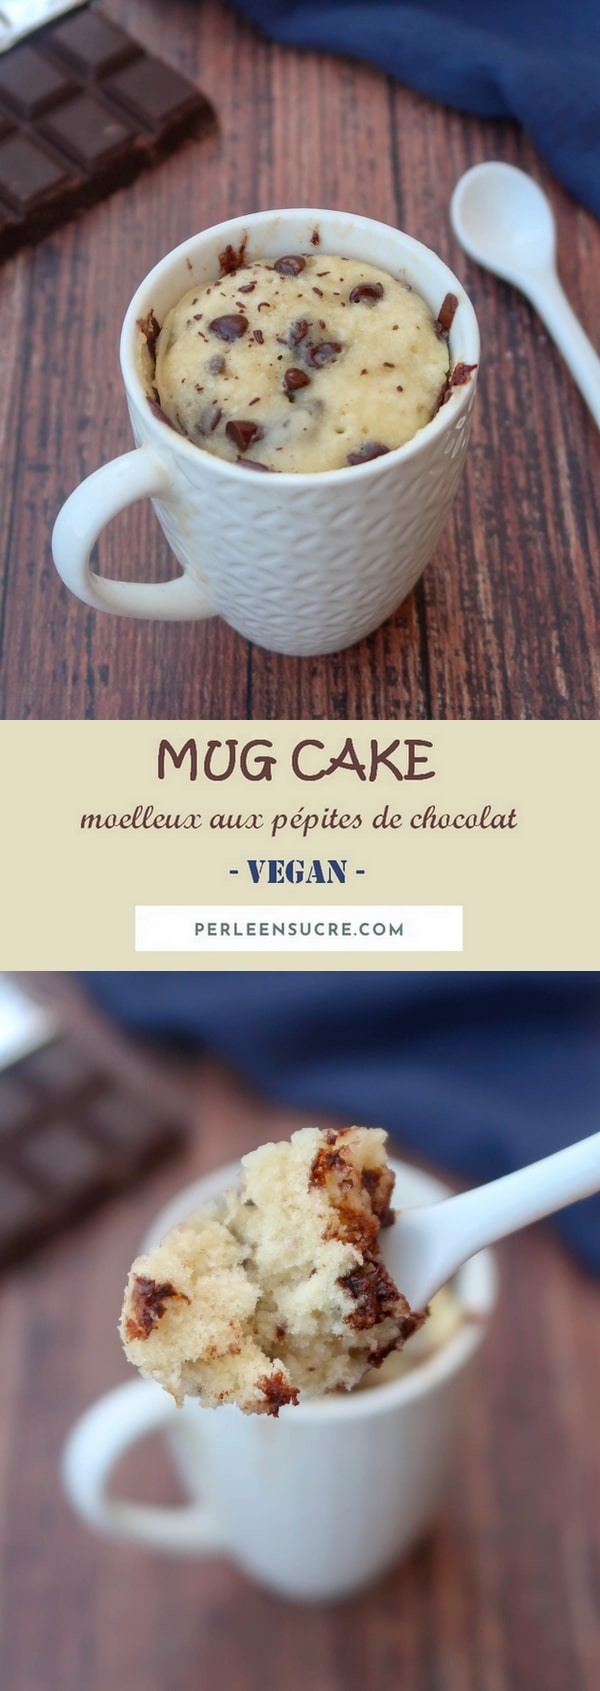 Mug cake moelleux aux pépites de chocolat {vegan}